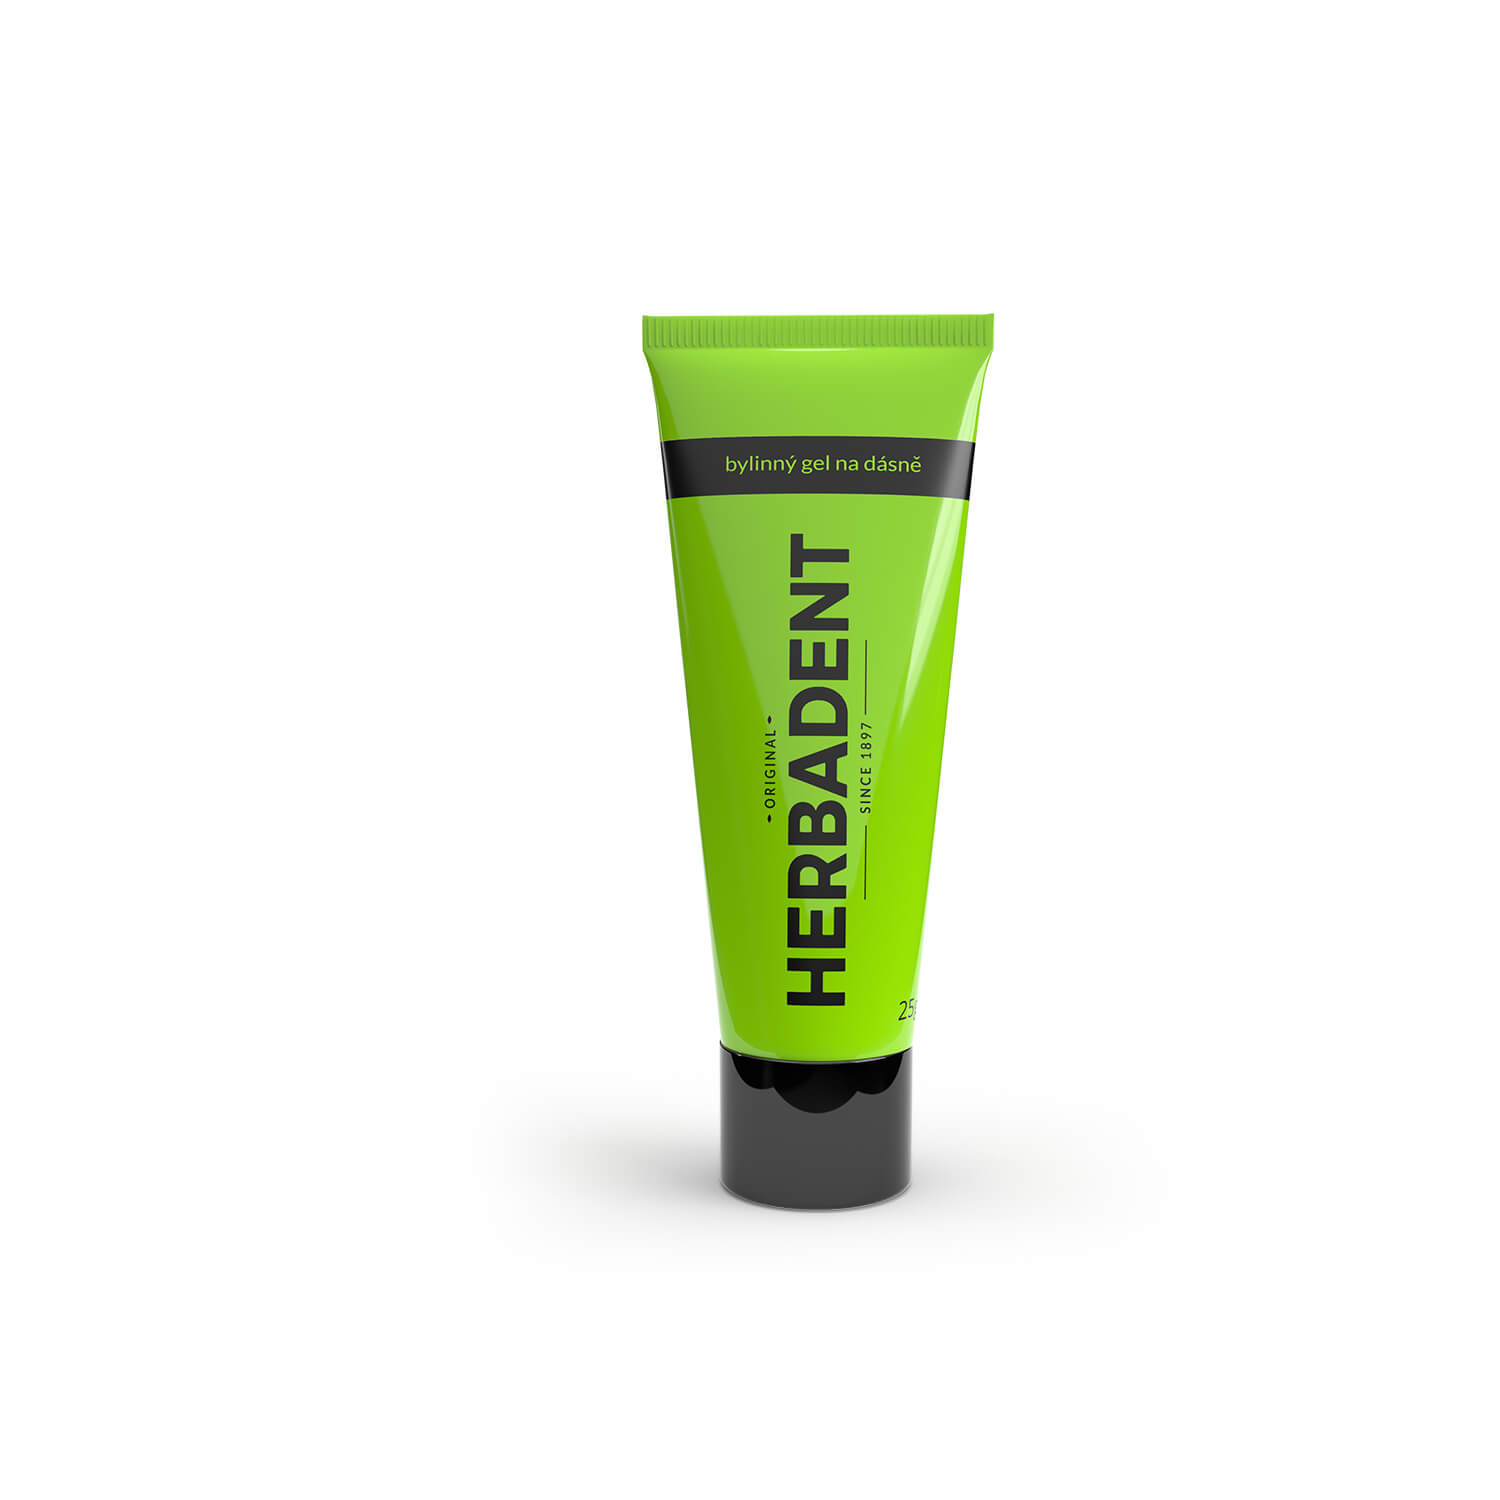 Zobrazit detail výrobku Herbadent Bylinný gel na dásně Professional 25 g